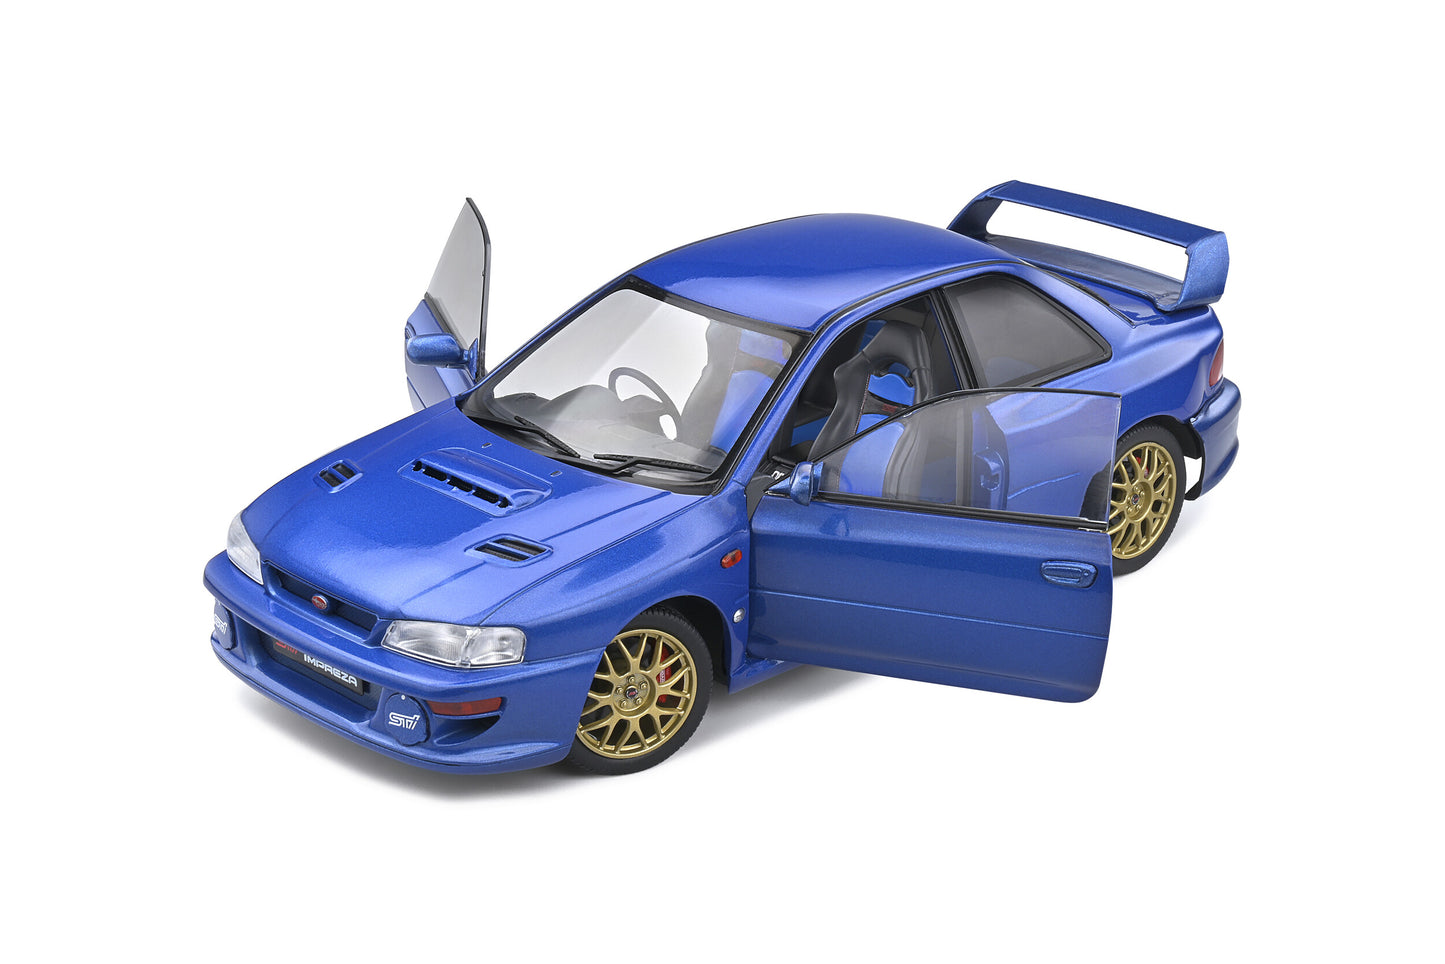 Solido - Subaru Impreza WRX STi 22B (Sonic Blue) 1:18 Scale Model Car